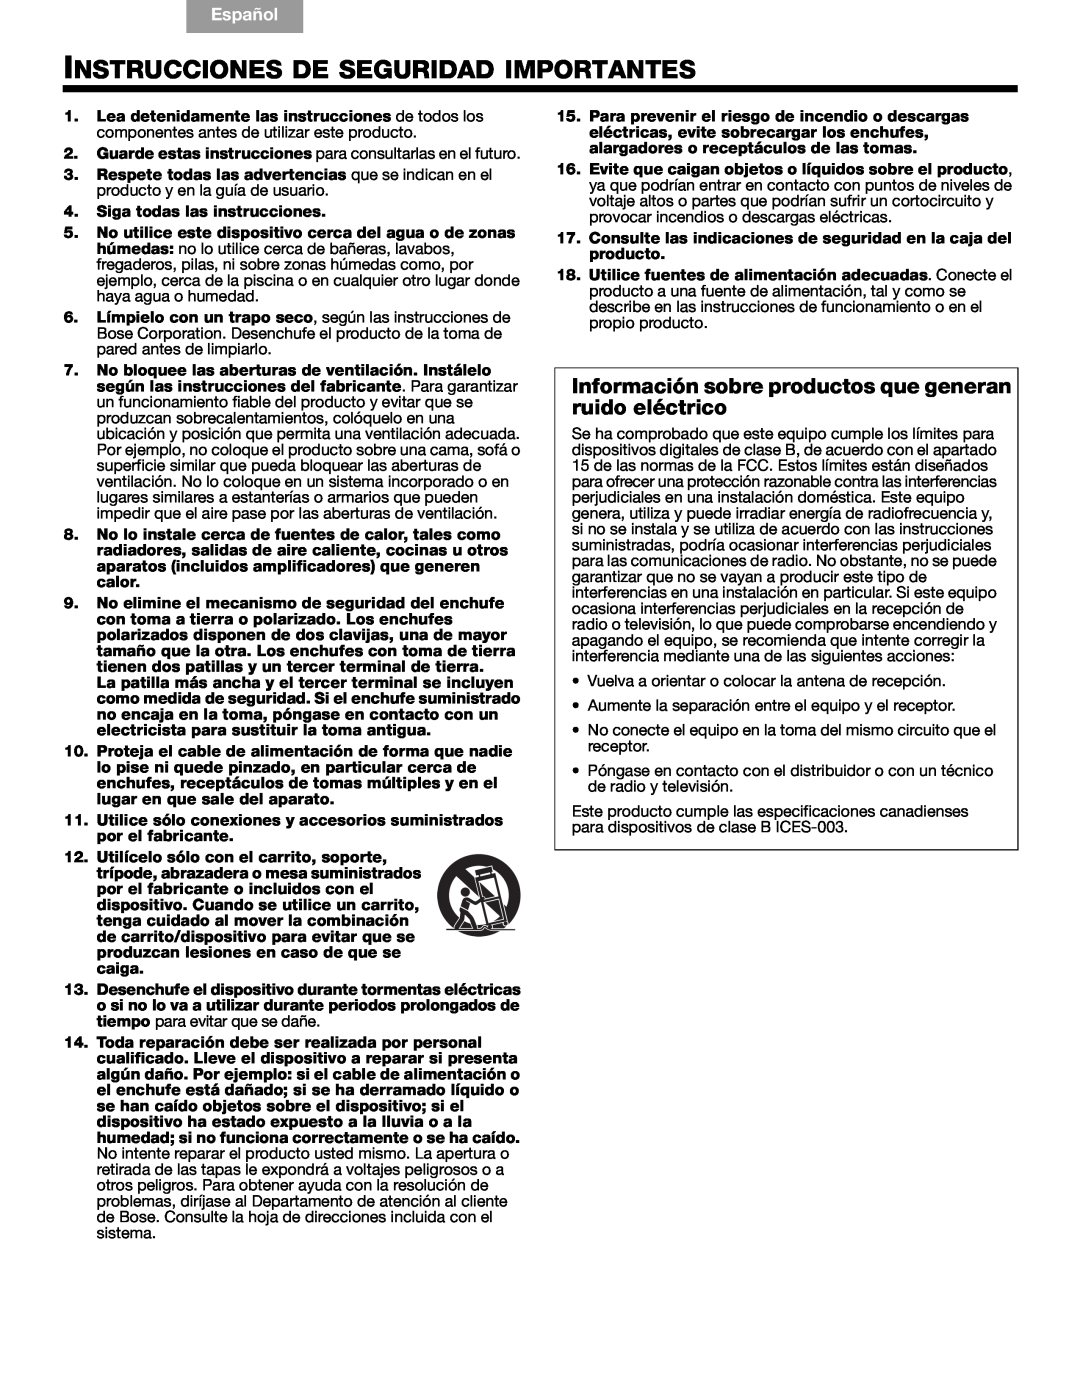 Bose Companion (R) 5, 40326 manual Instrucciones De Seguridad Importantes, English, Español, Français 